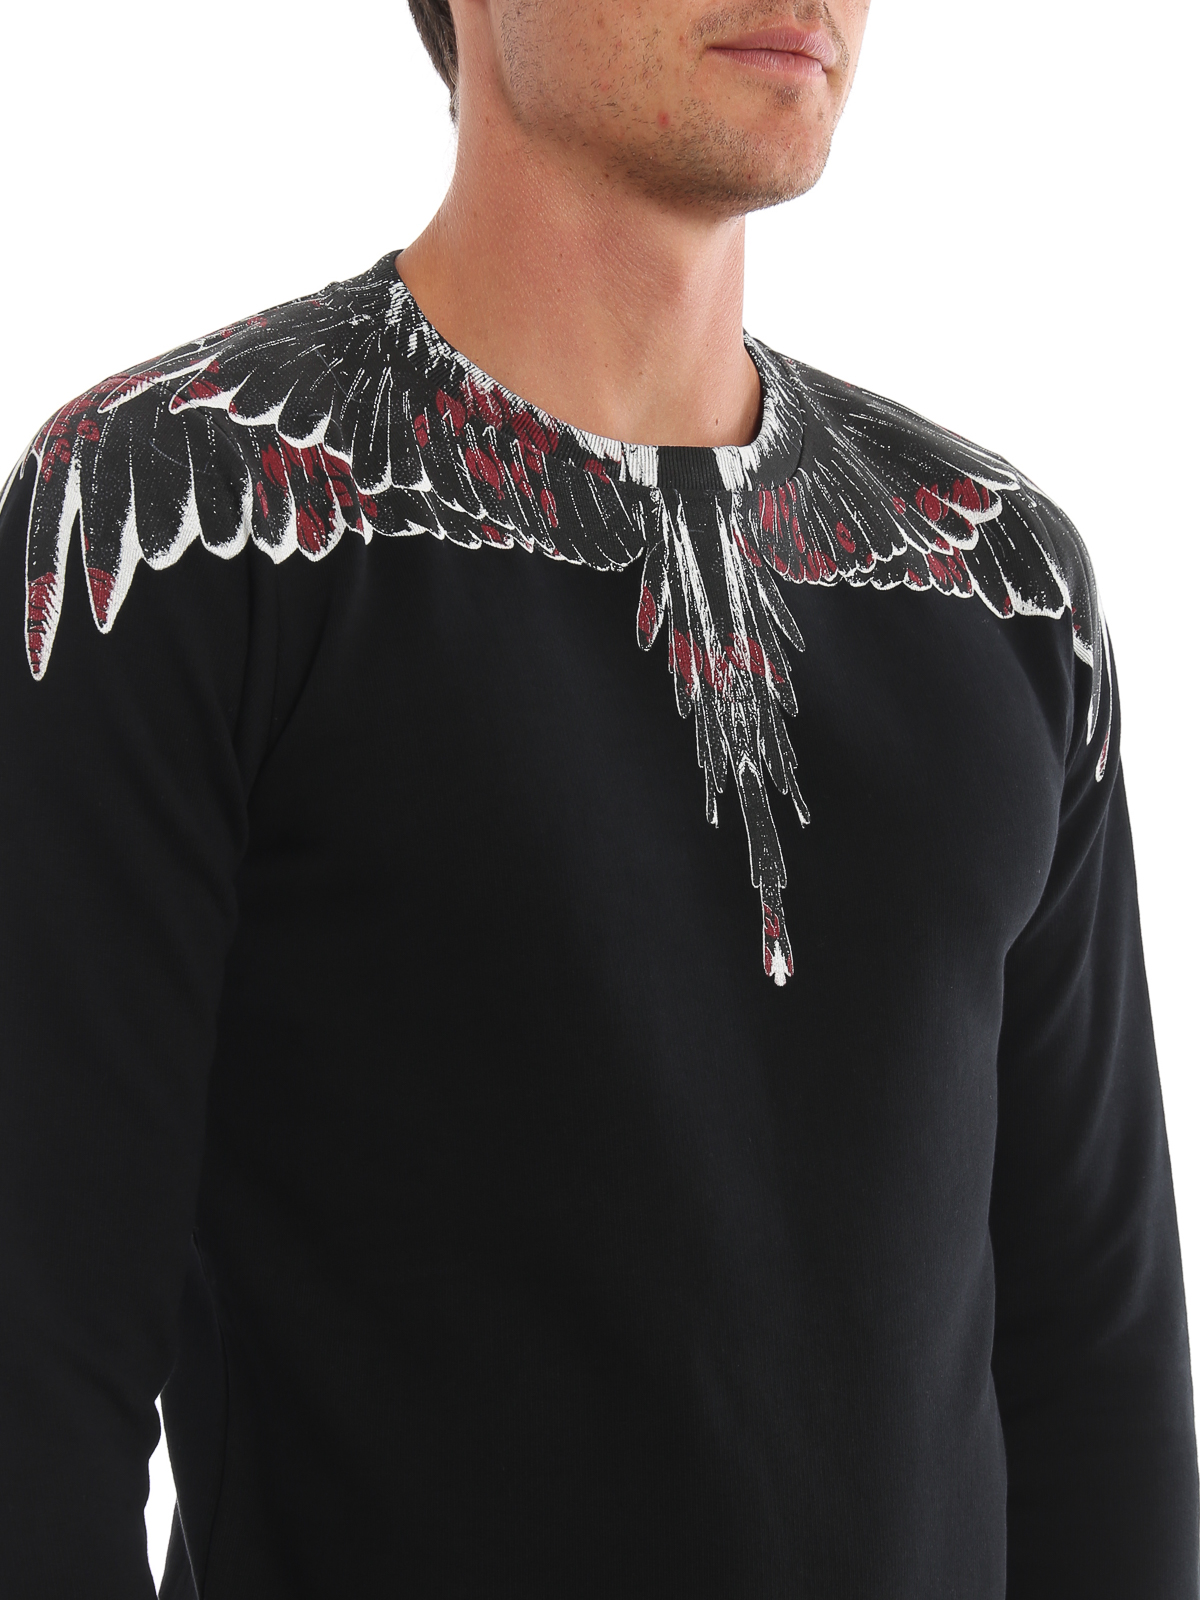 massefylde Seraph uklar Sweatshirts & Sweaters Marcelo Burlon - Flower Wings black sweatshirt -  CMBA009E196300081088